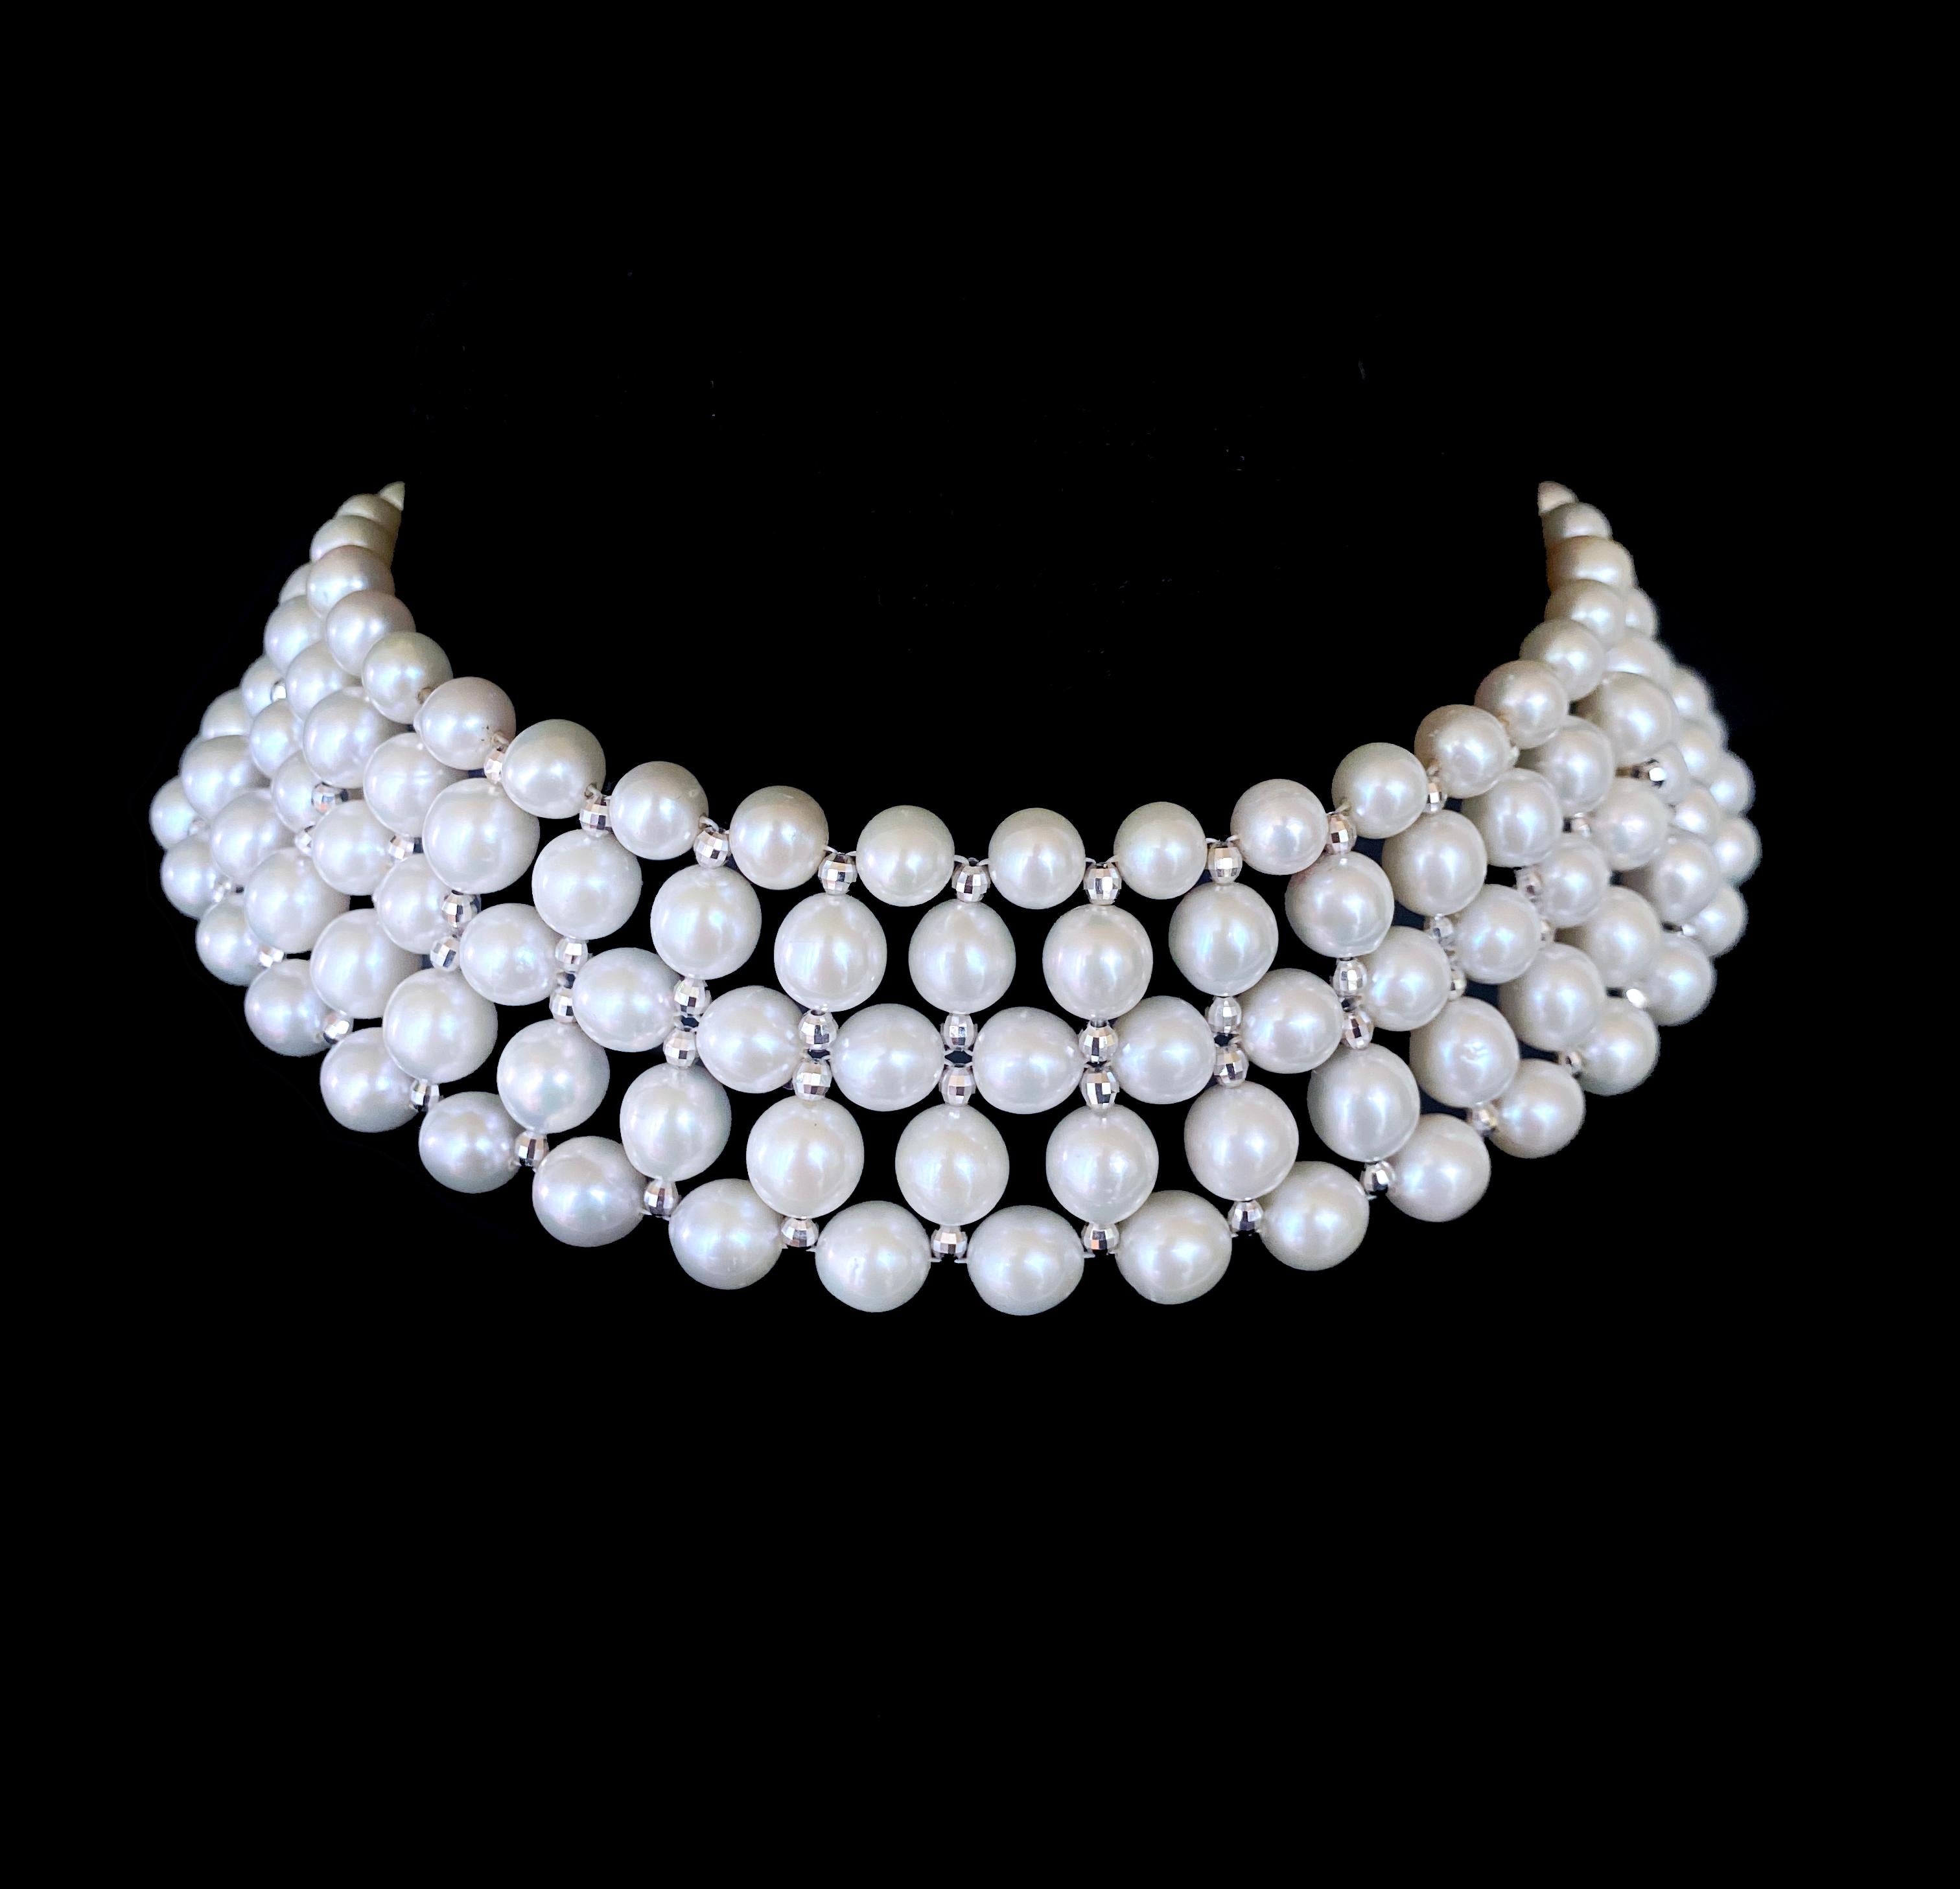 Fabriqué par Marina J. Ce magnifique collier ras du cou est composé de perles blanches très brillantes qui présentent un éclat magnifique, le tout tissé dans un design magnifique et classique. Des perles facettées en argent plaqué rhodium sont